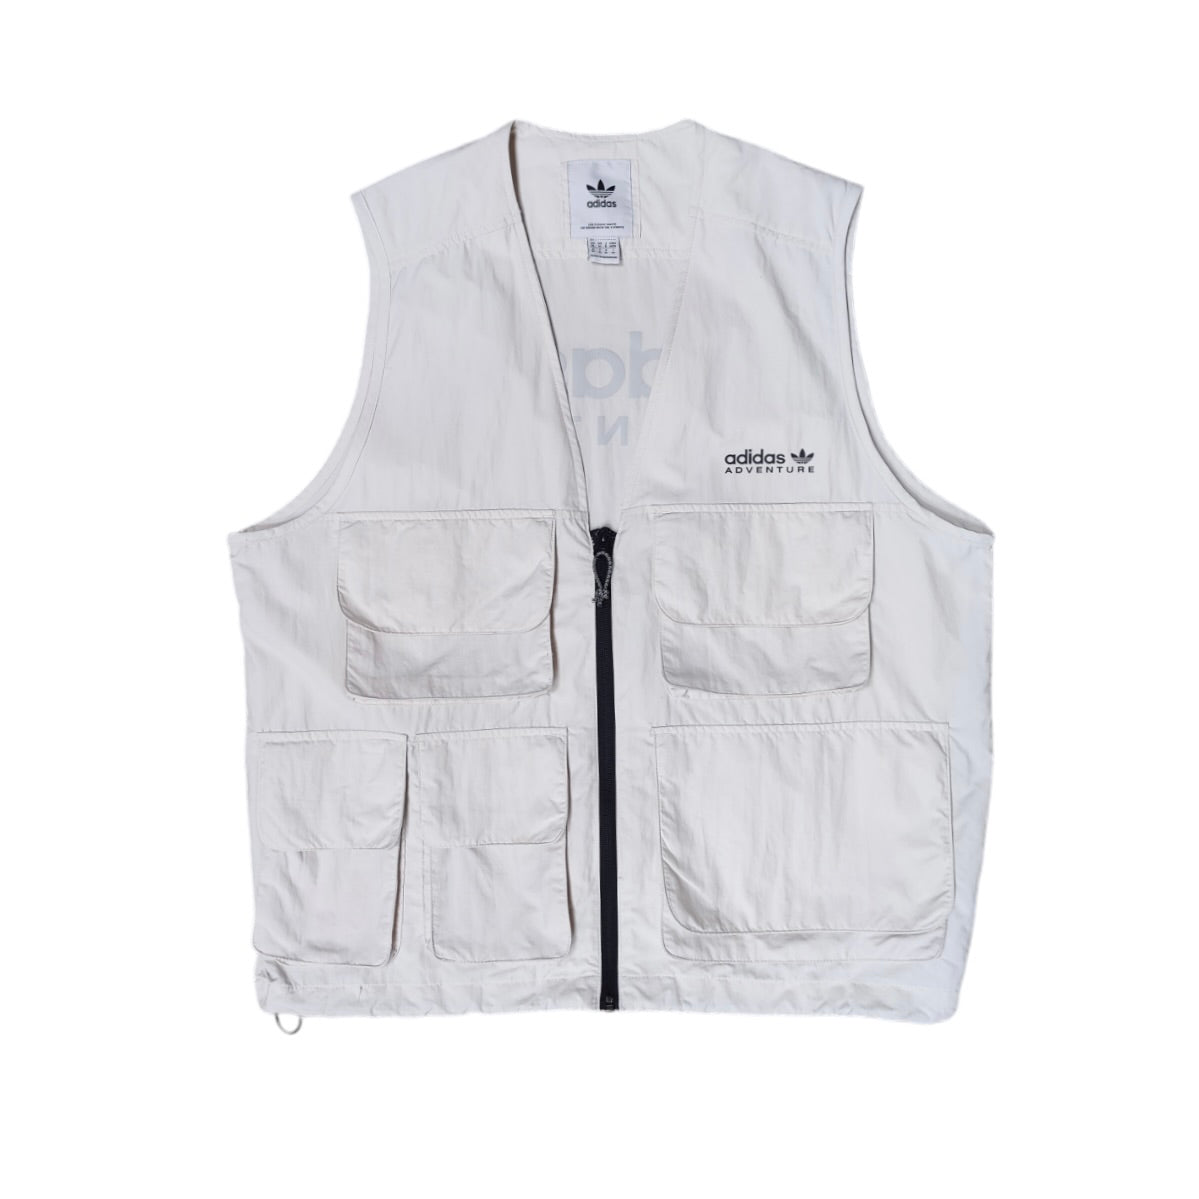 Adidas Originals Adventure White Vest